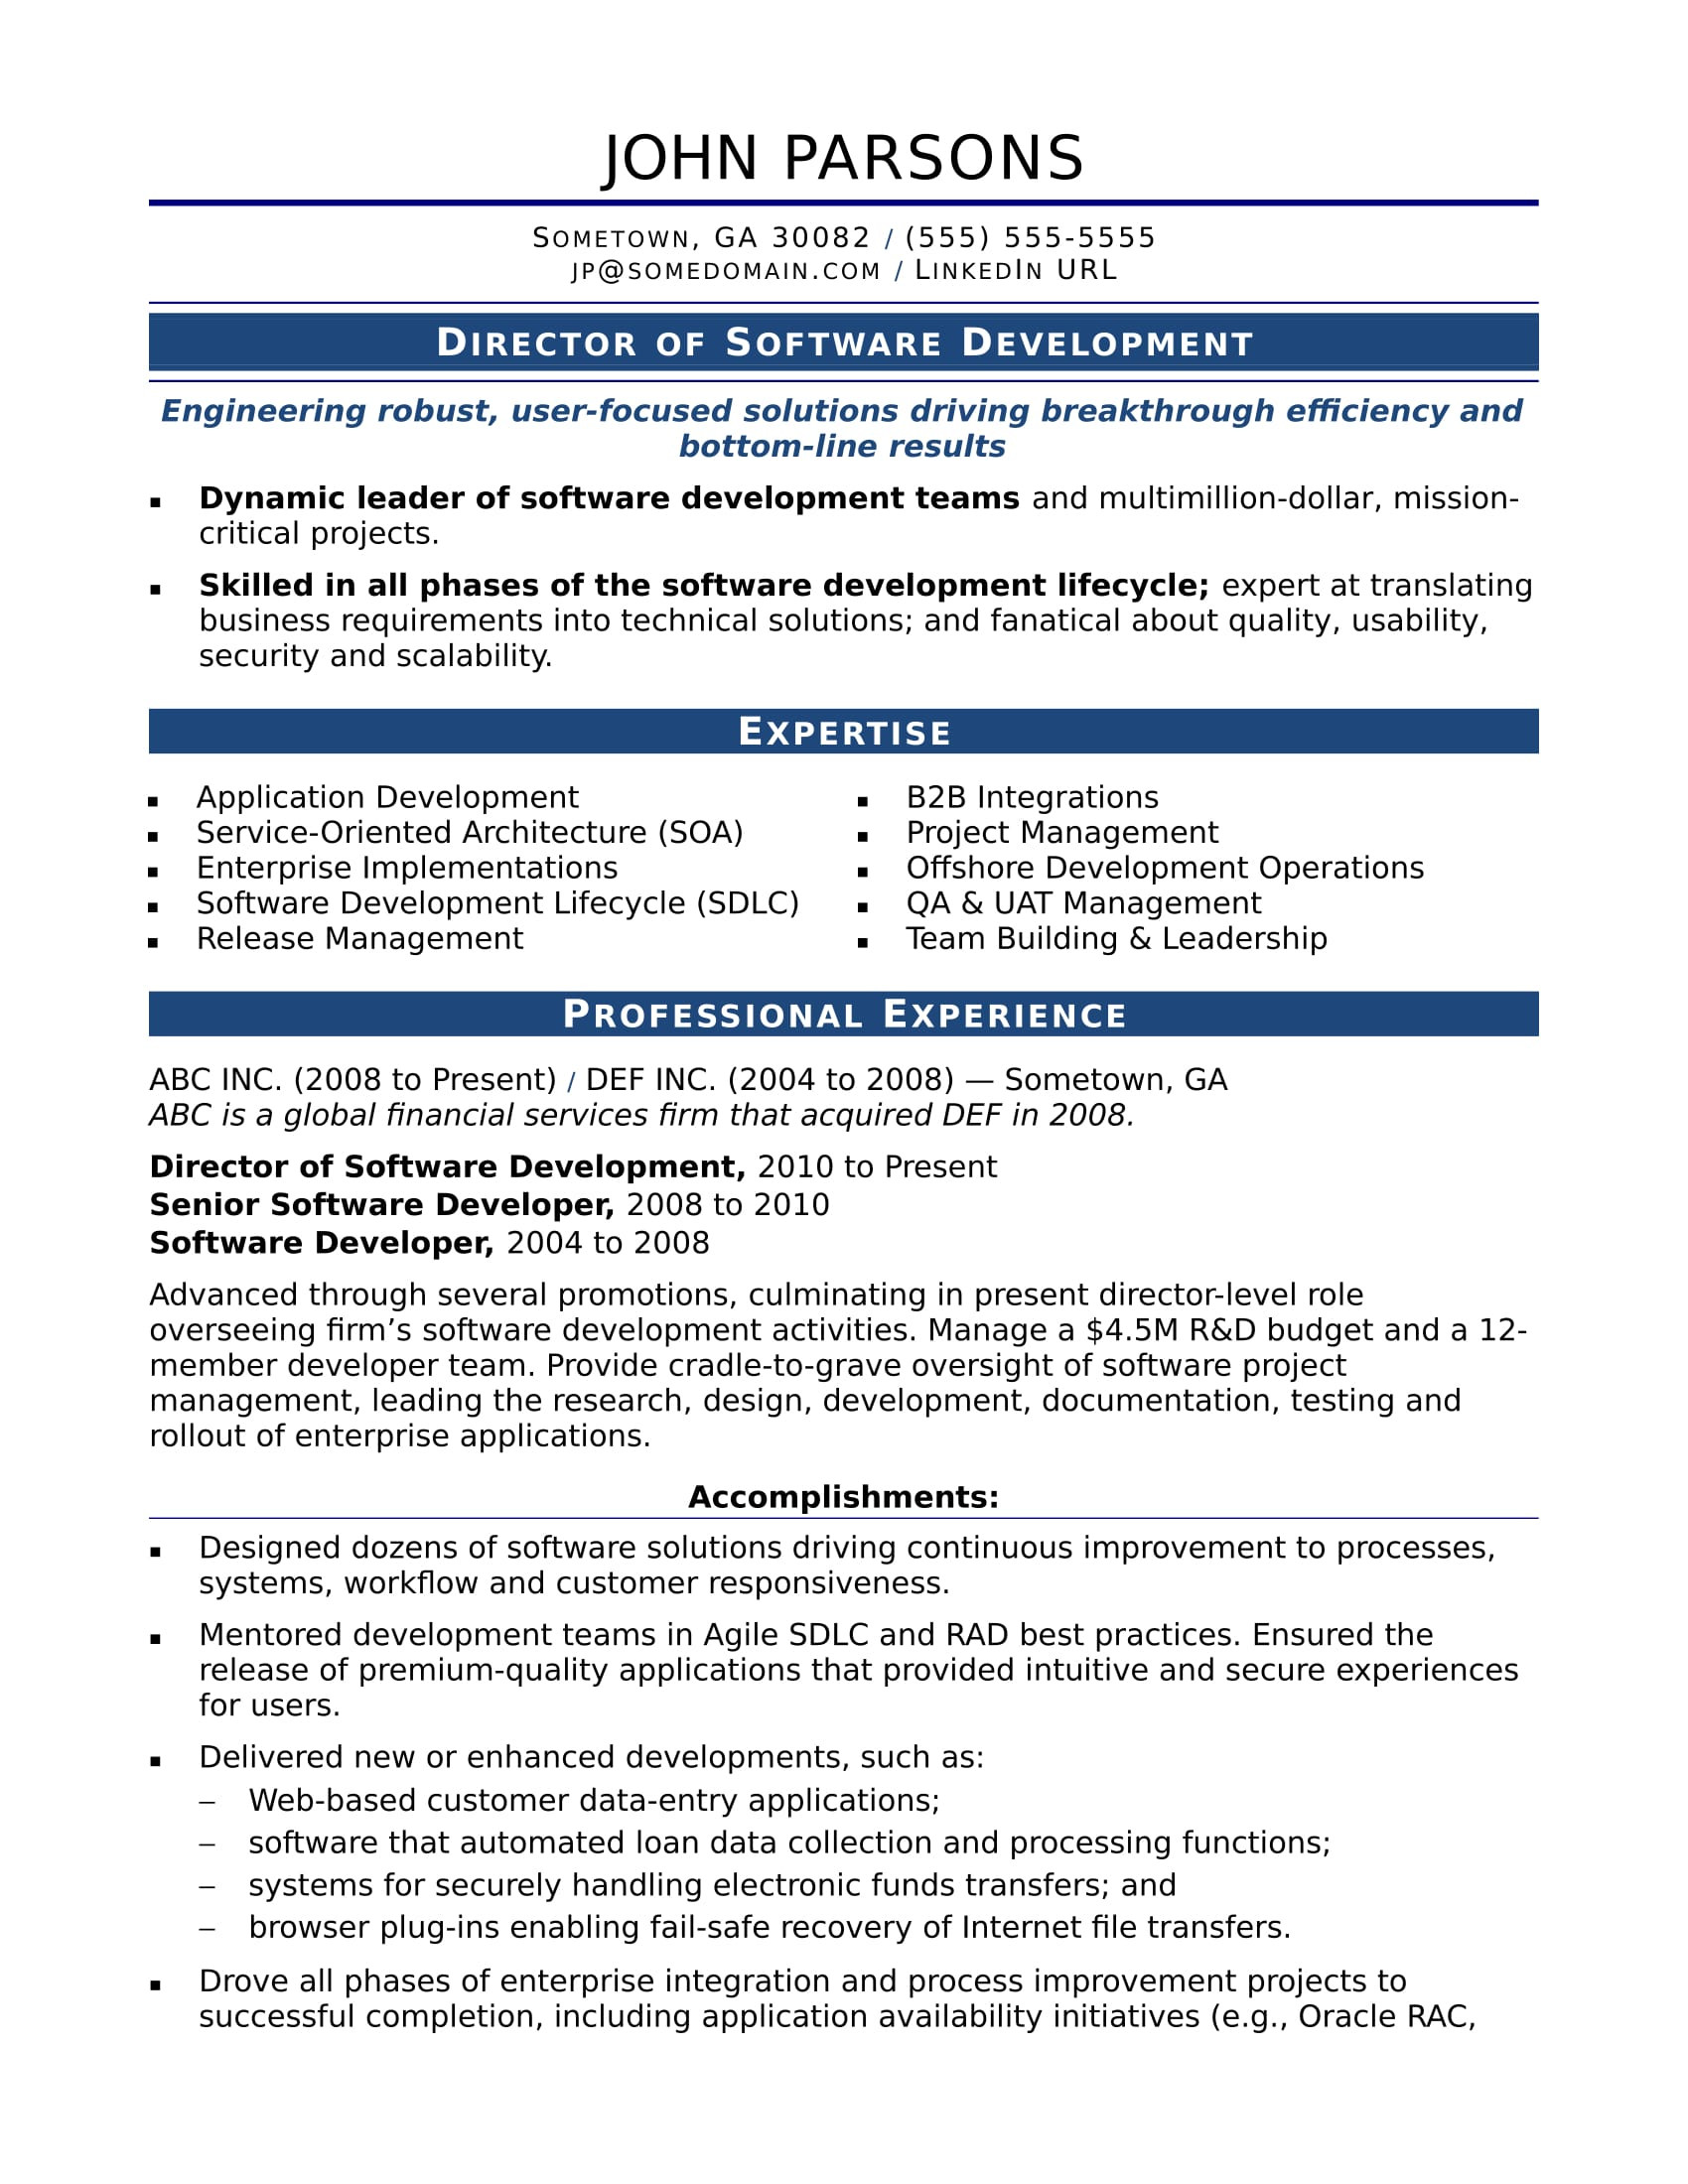 Resume Sample for associate Development Job Sample Resume for An Experienced It Developer Monster.com